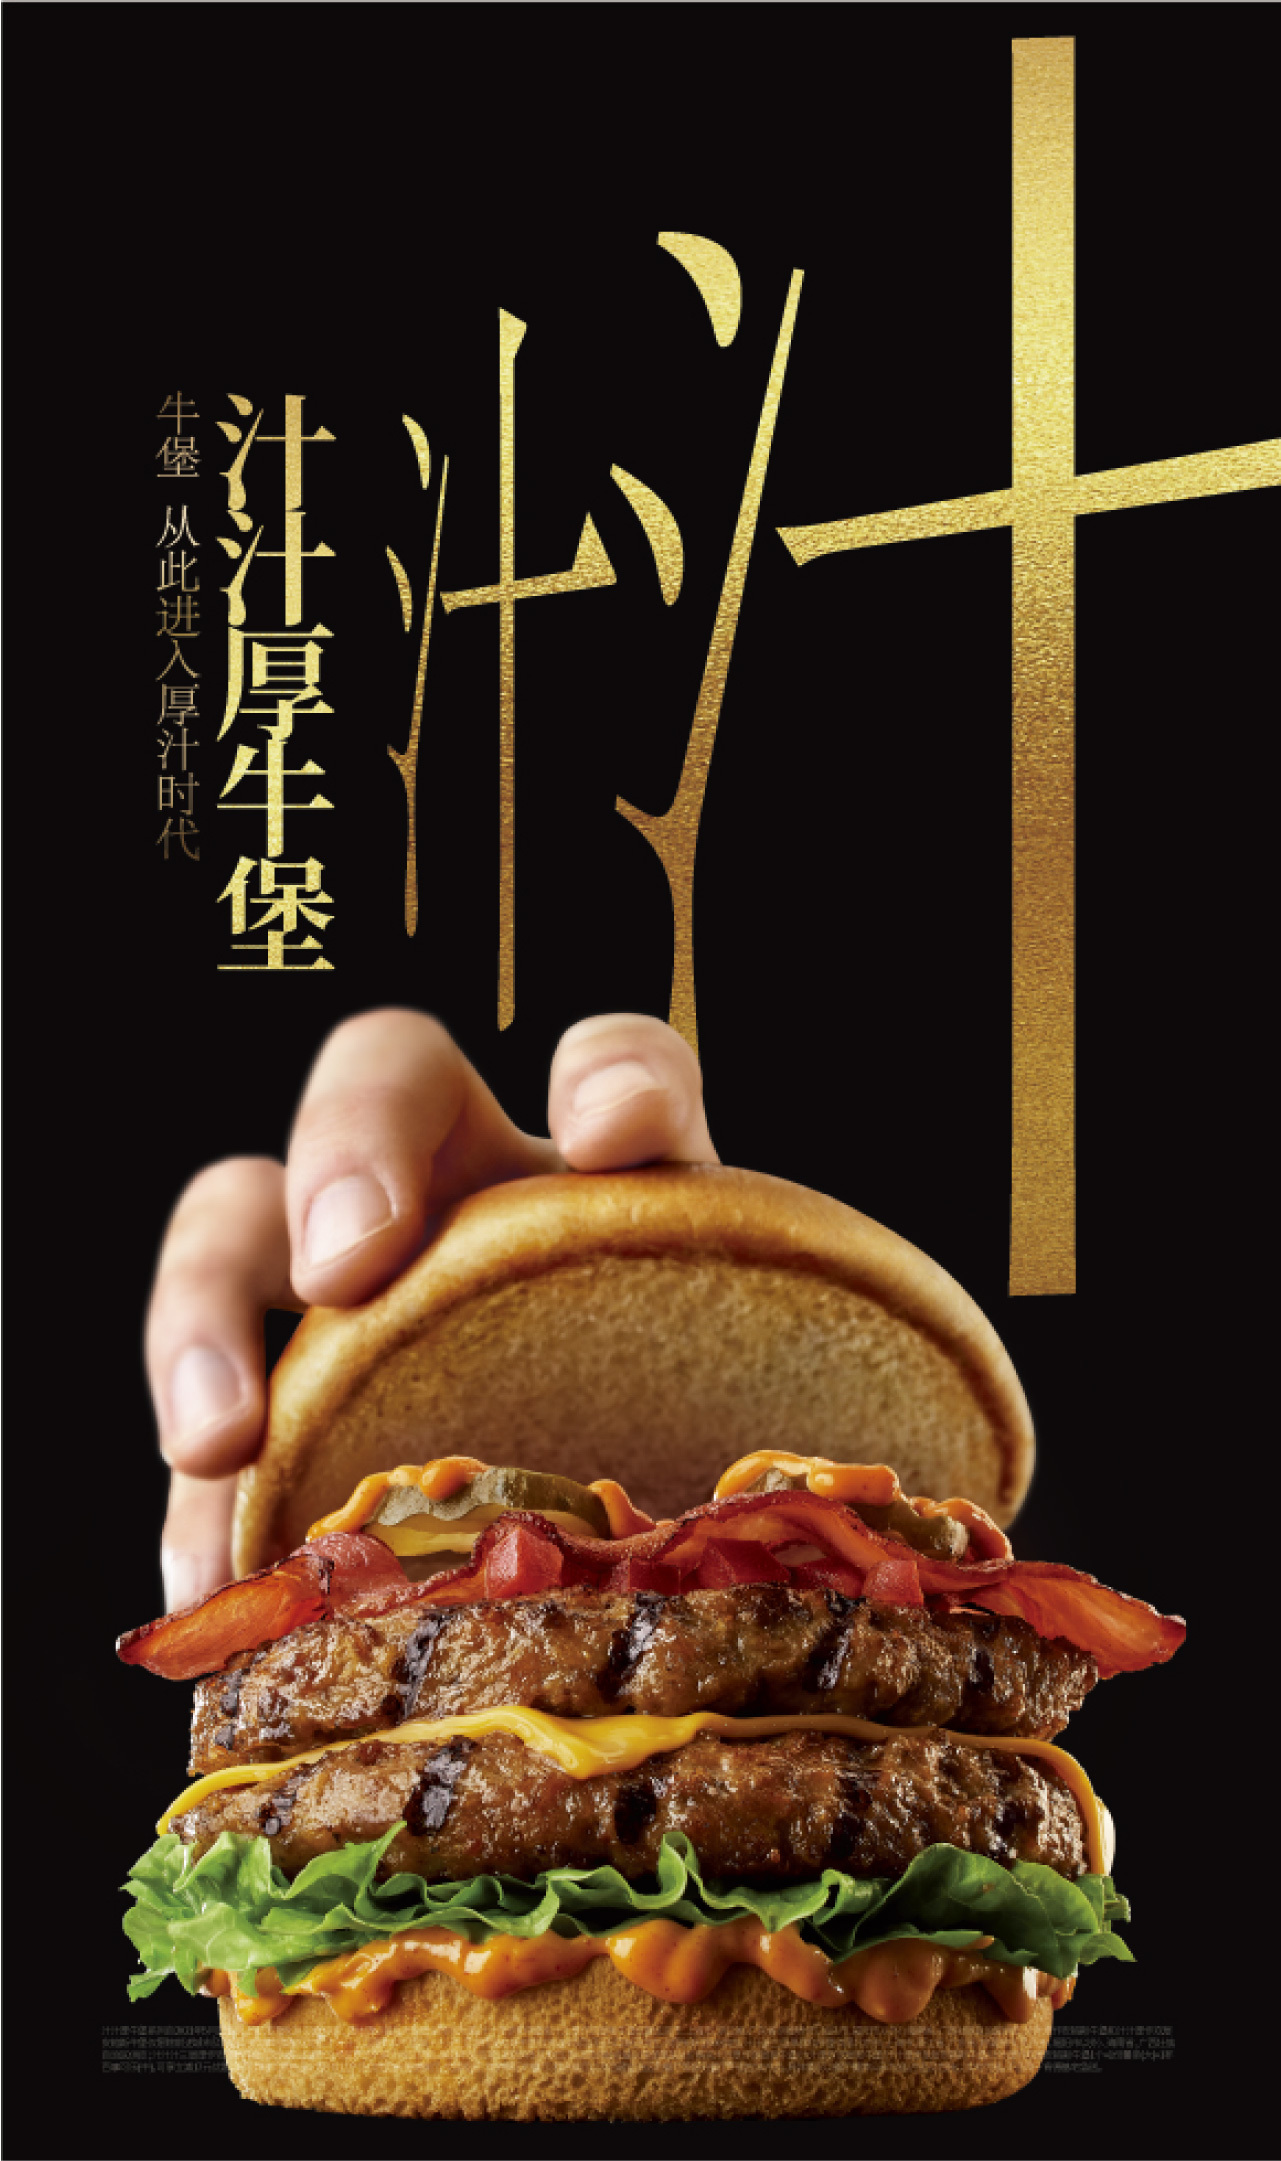 [食記] 中國麥當勞-不素之霸 - fastfood | PTT旅遊美食區